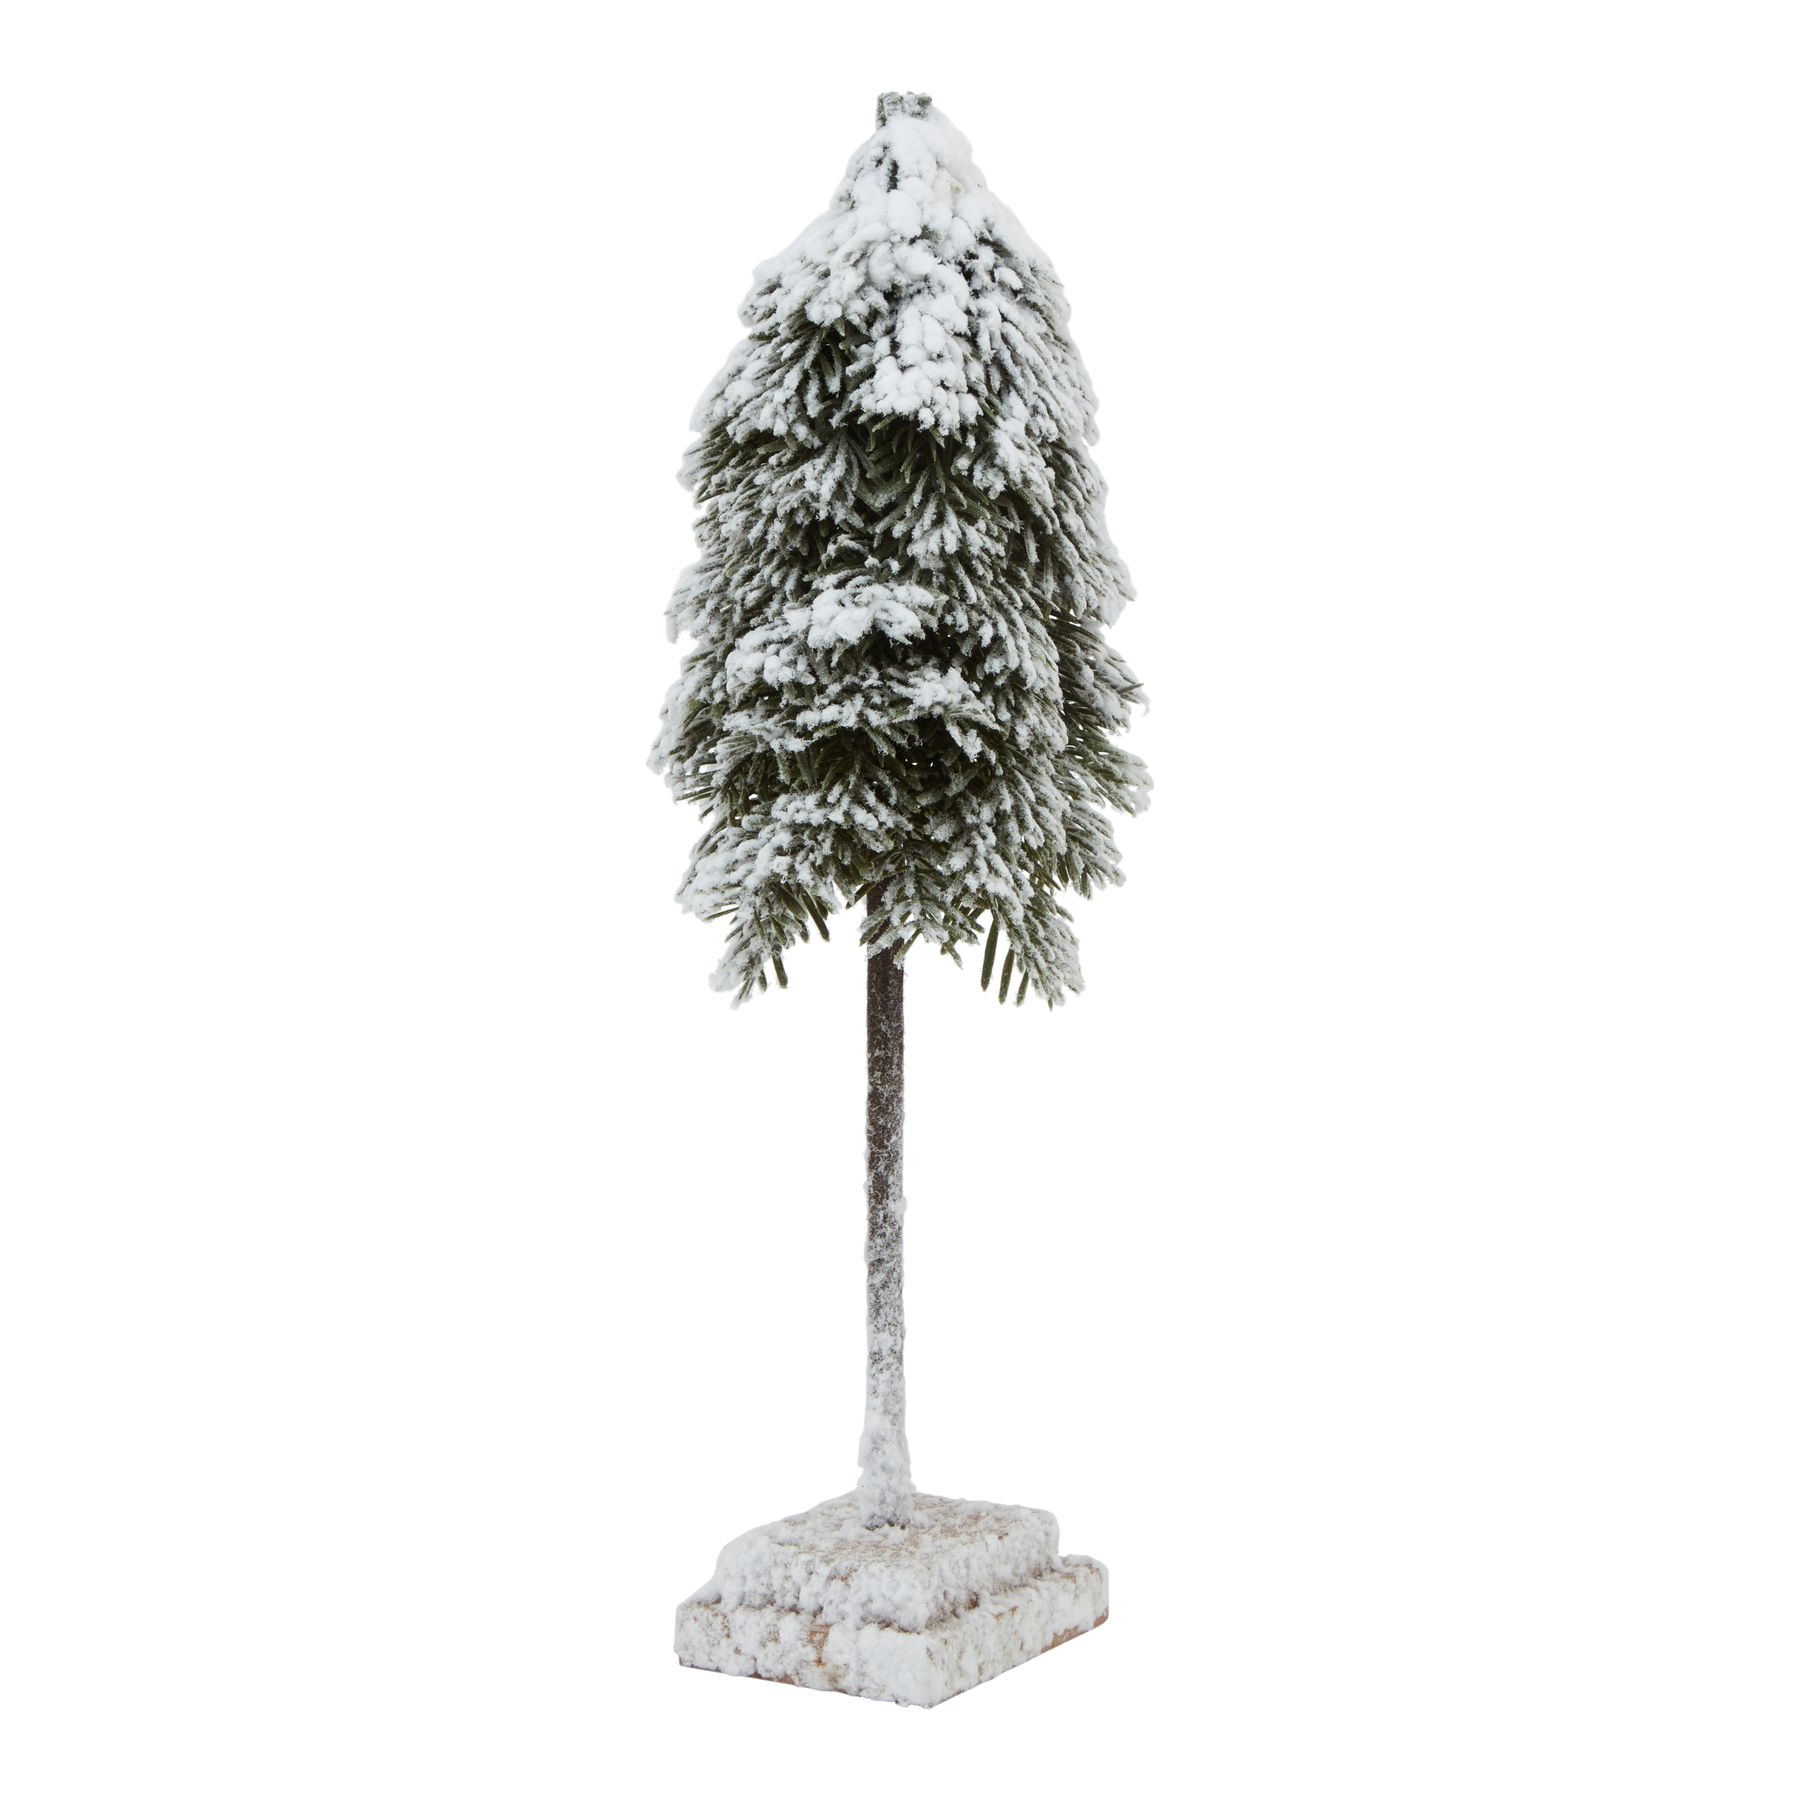 Medium Snowy Cedar Tree On Wood Block - Image 1